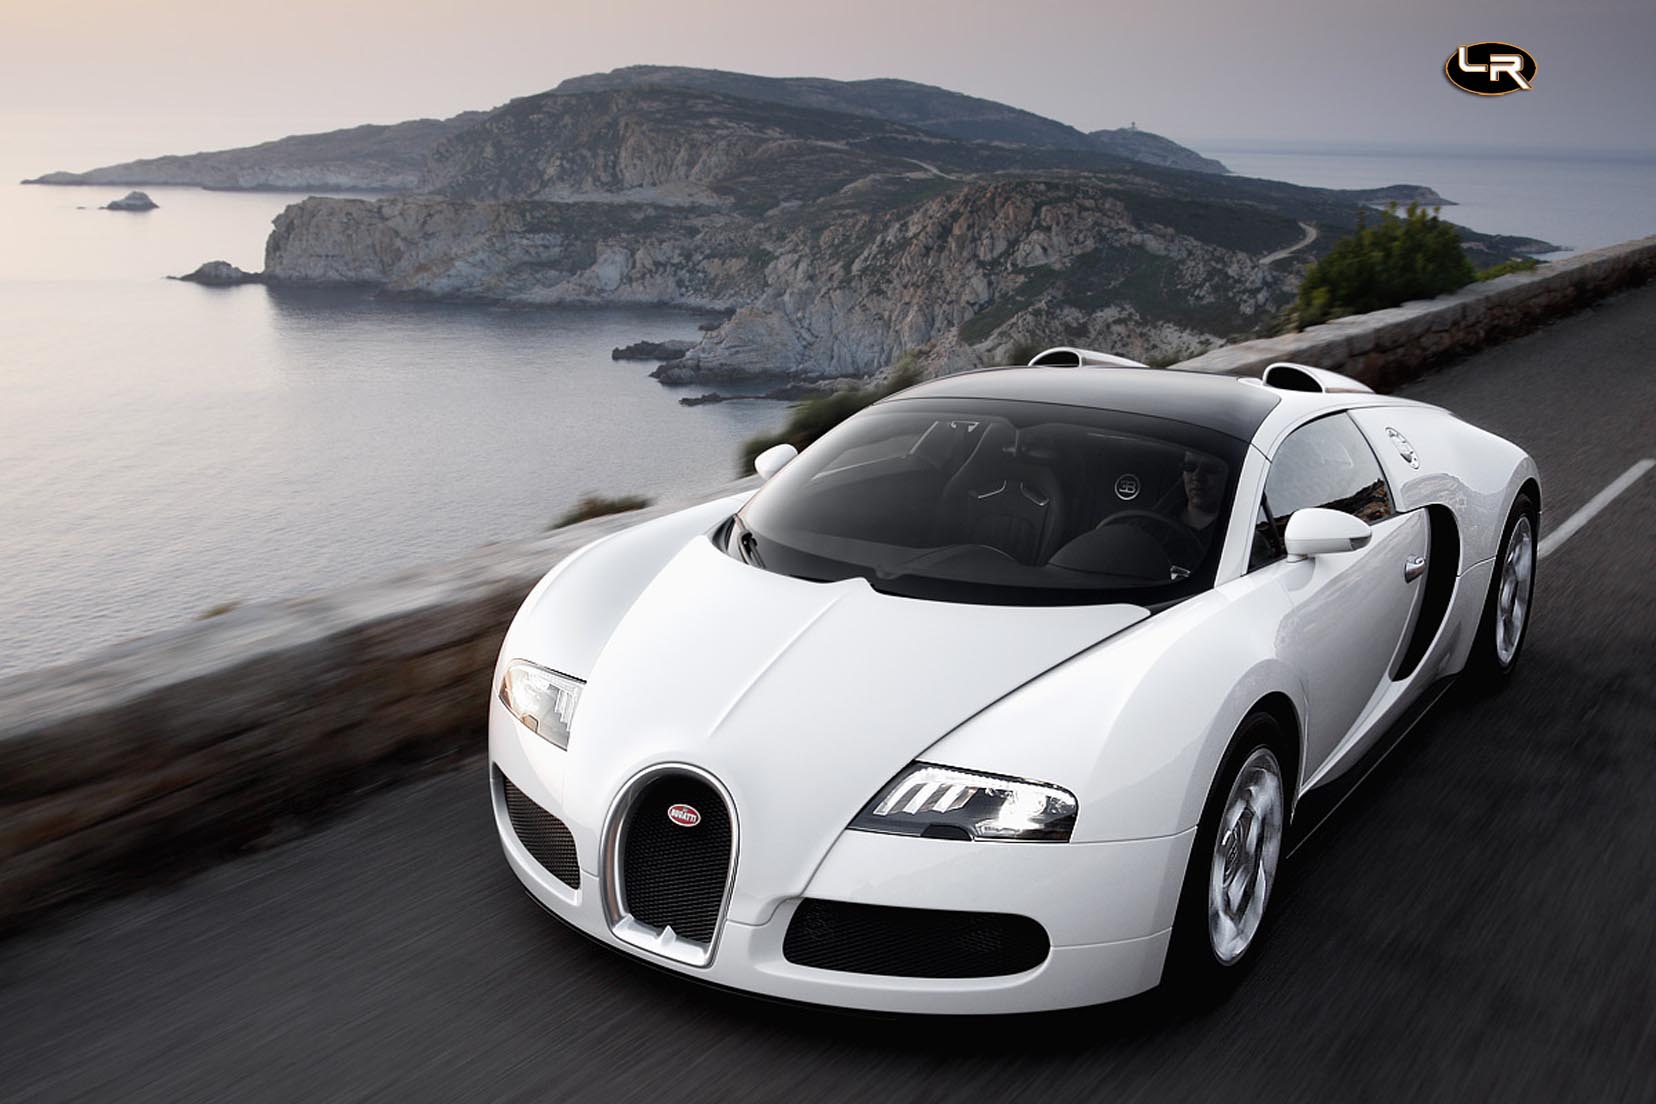 Image principale de l'actu: Bugatti veyron encore 15 exemplaires a produire 